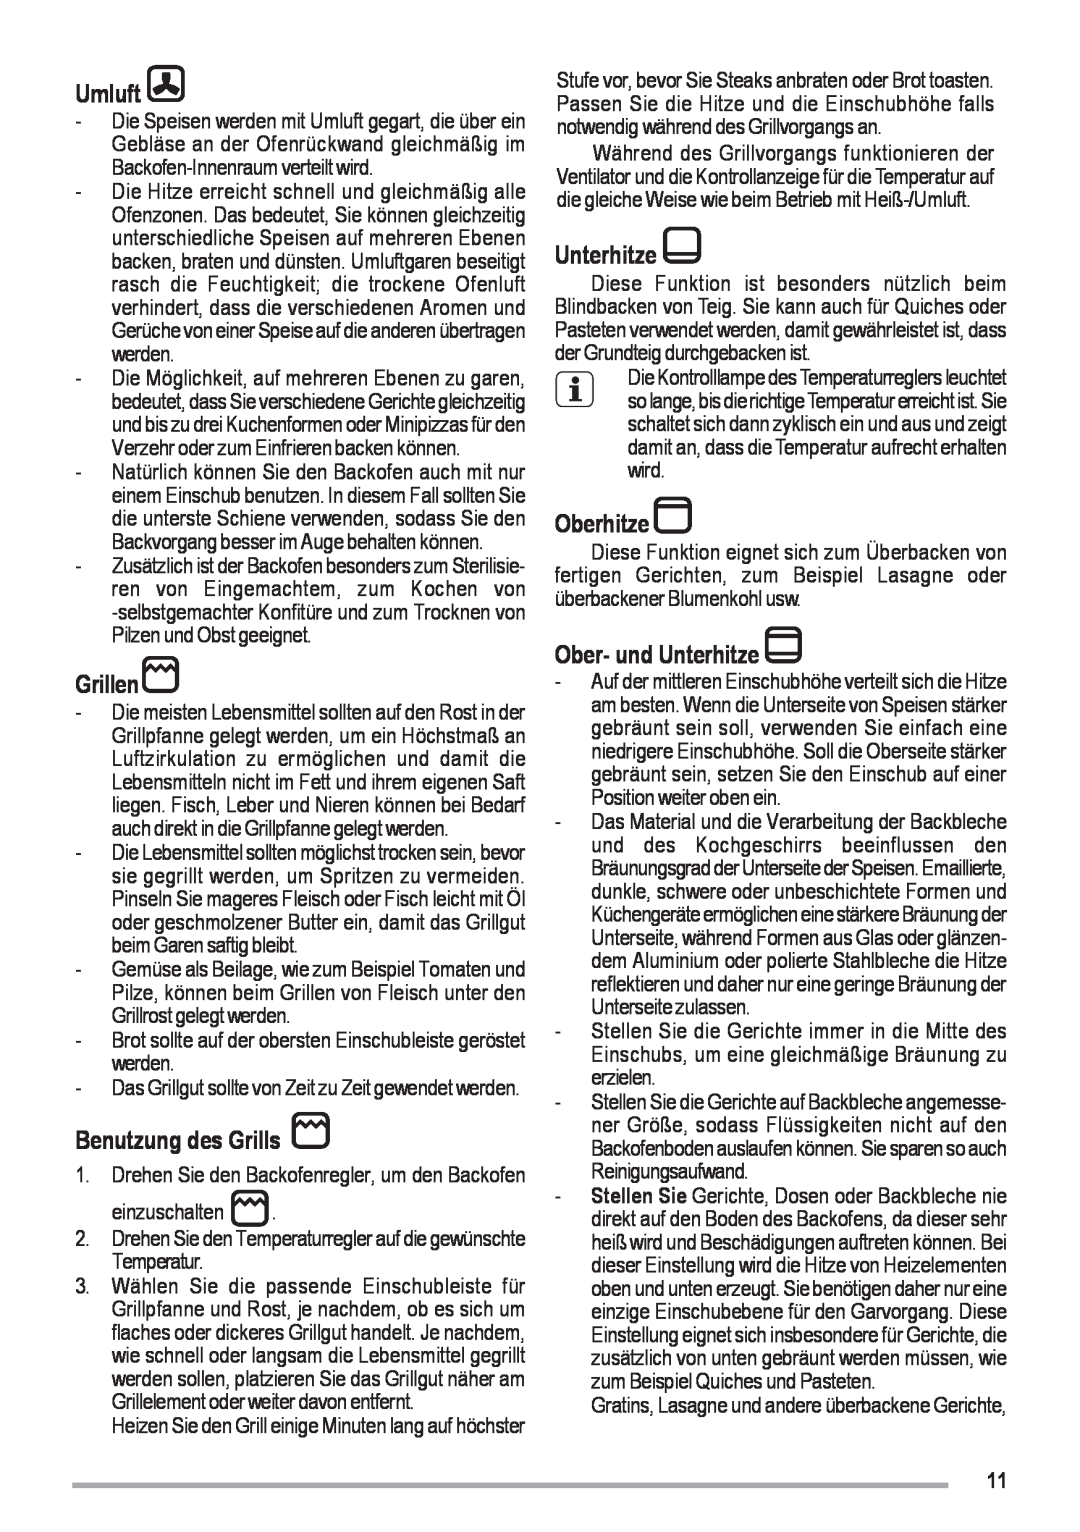 Zanussi ZOU 461 manual Umluft, Grillen, Benutzung des Grills, Oberhitze, Ober- und Unterhitze 